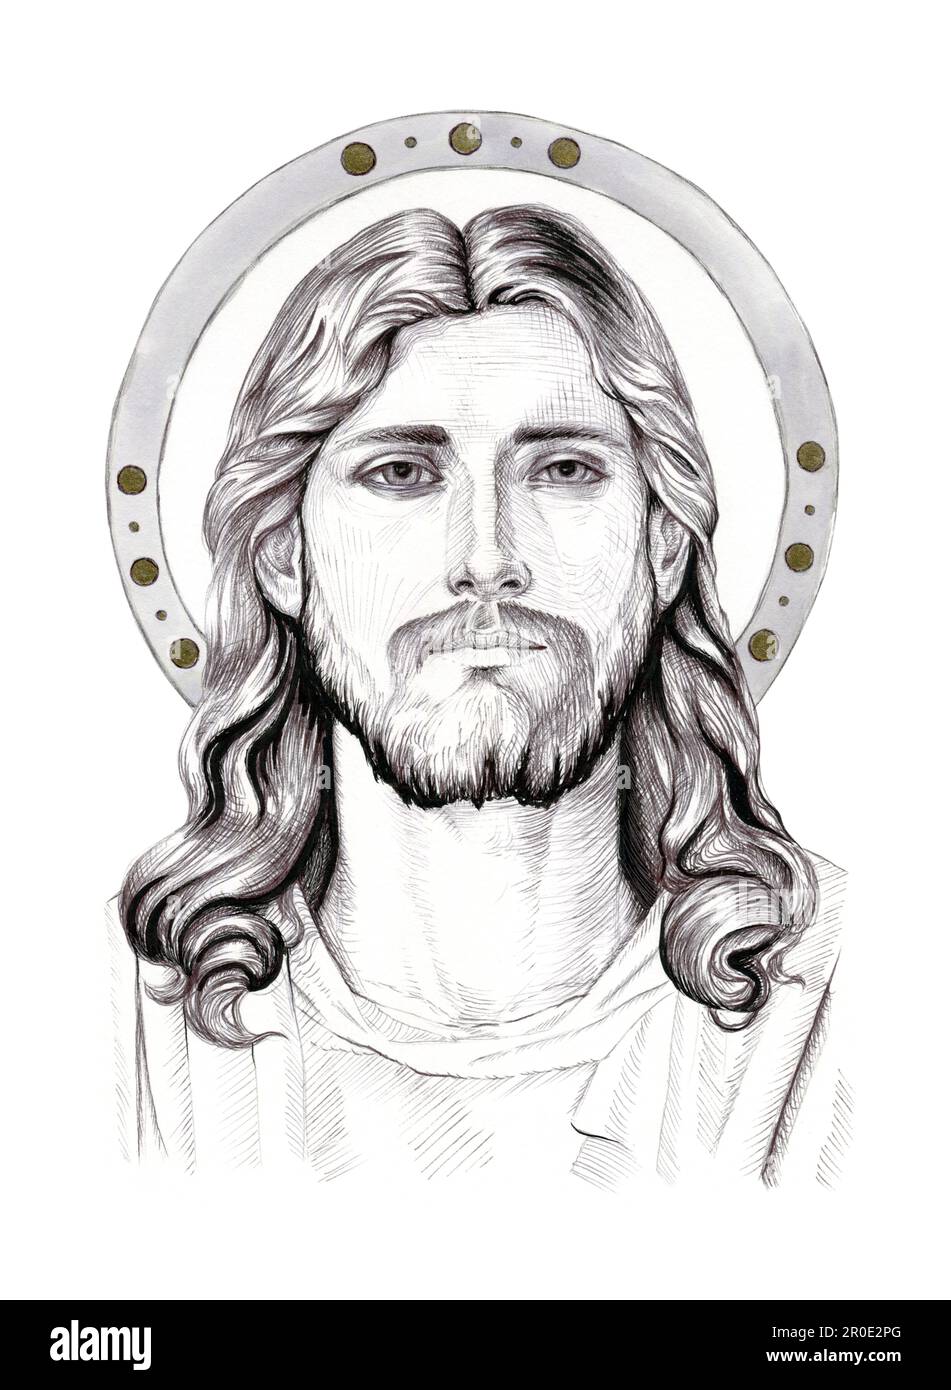 Portrait de Jésus-Christ. Illustration à l'encre traditionnelle sur papier. Banque D'Images